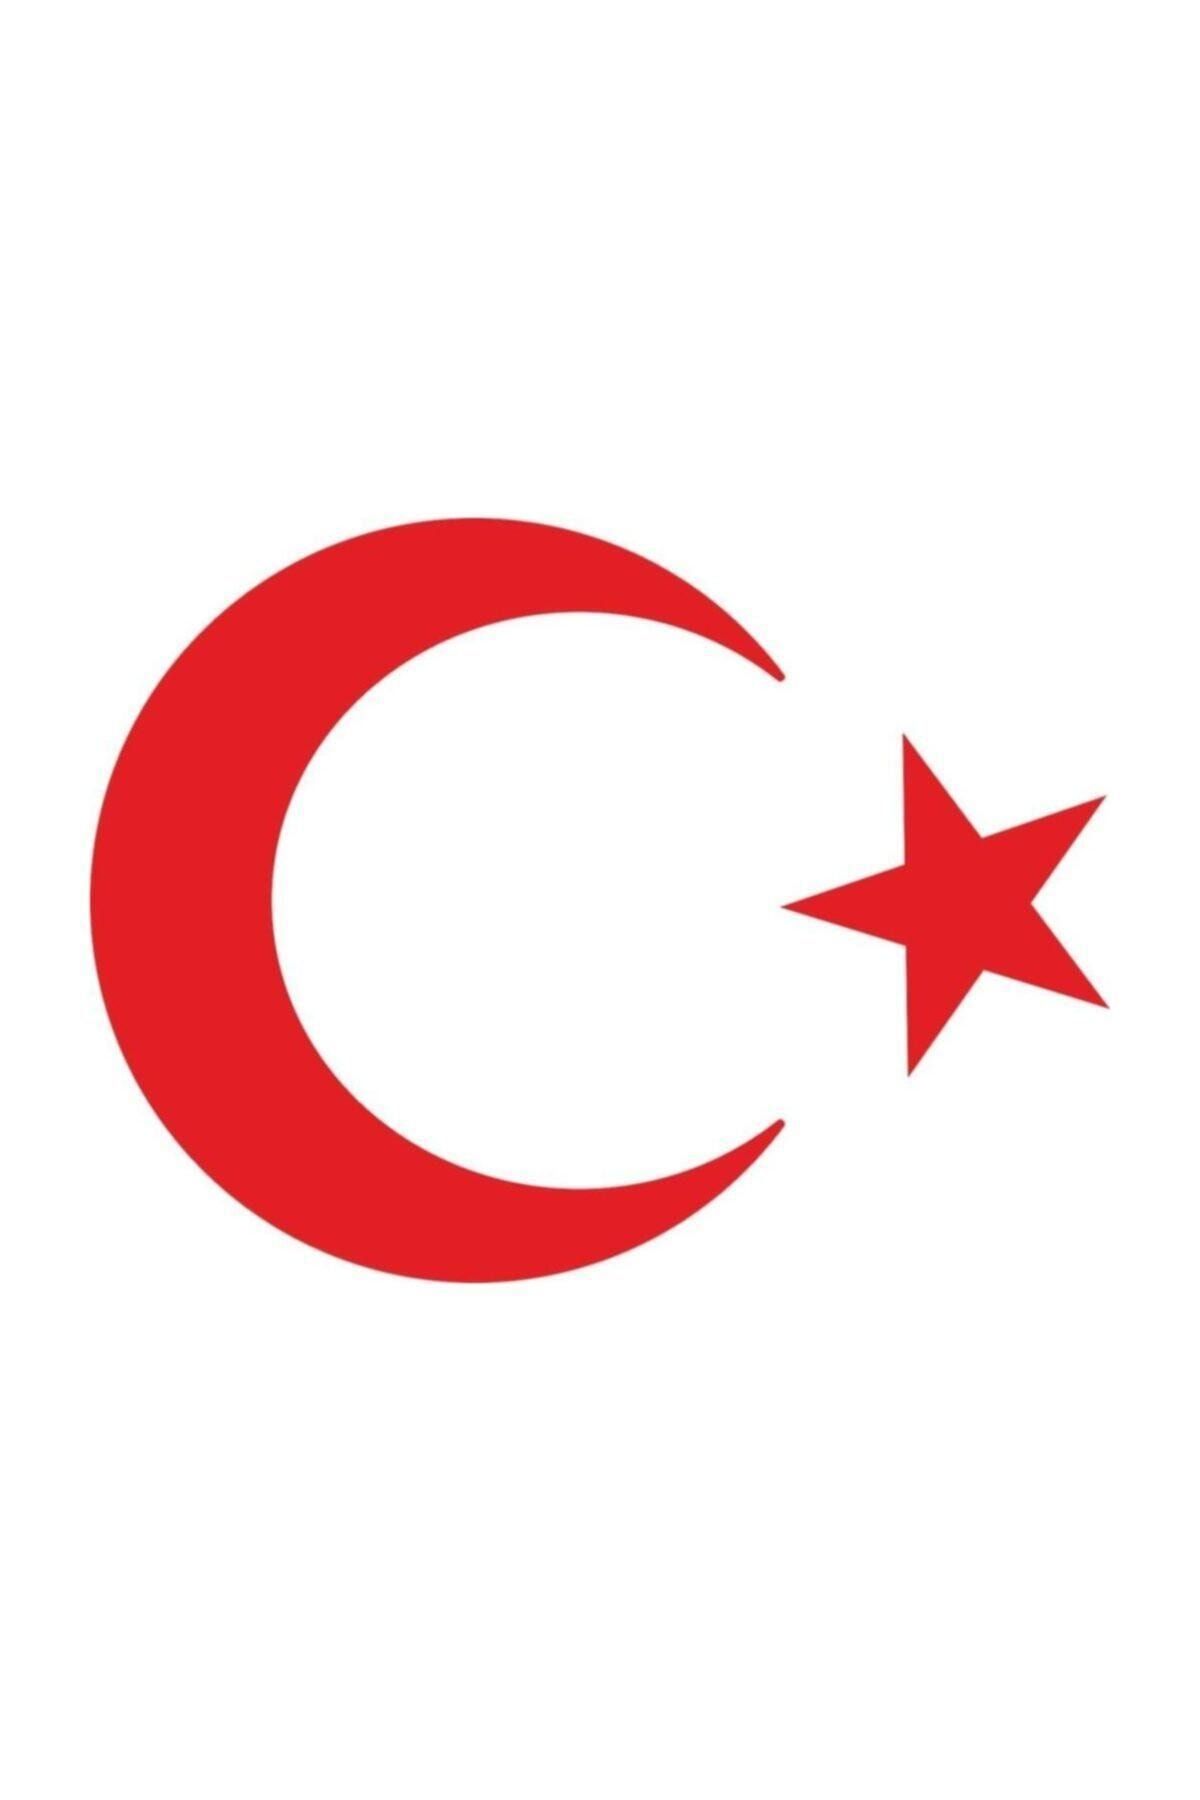 Bak Karıştır Ay Yıldız Türk Bayrağı Sticker Kırmızı Renk 20x17 Cm